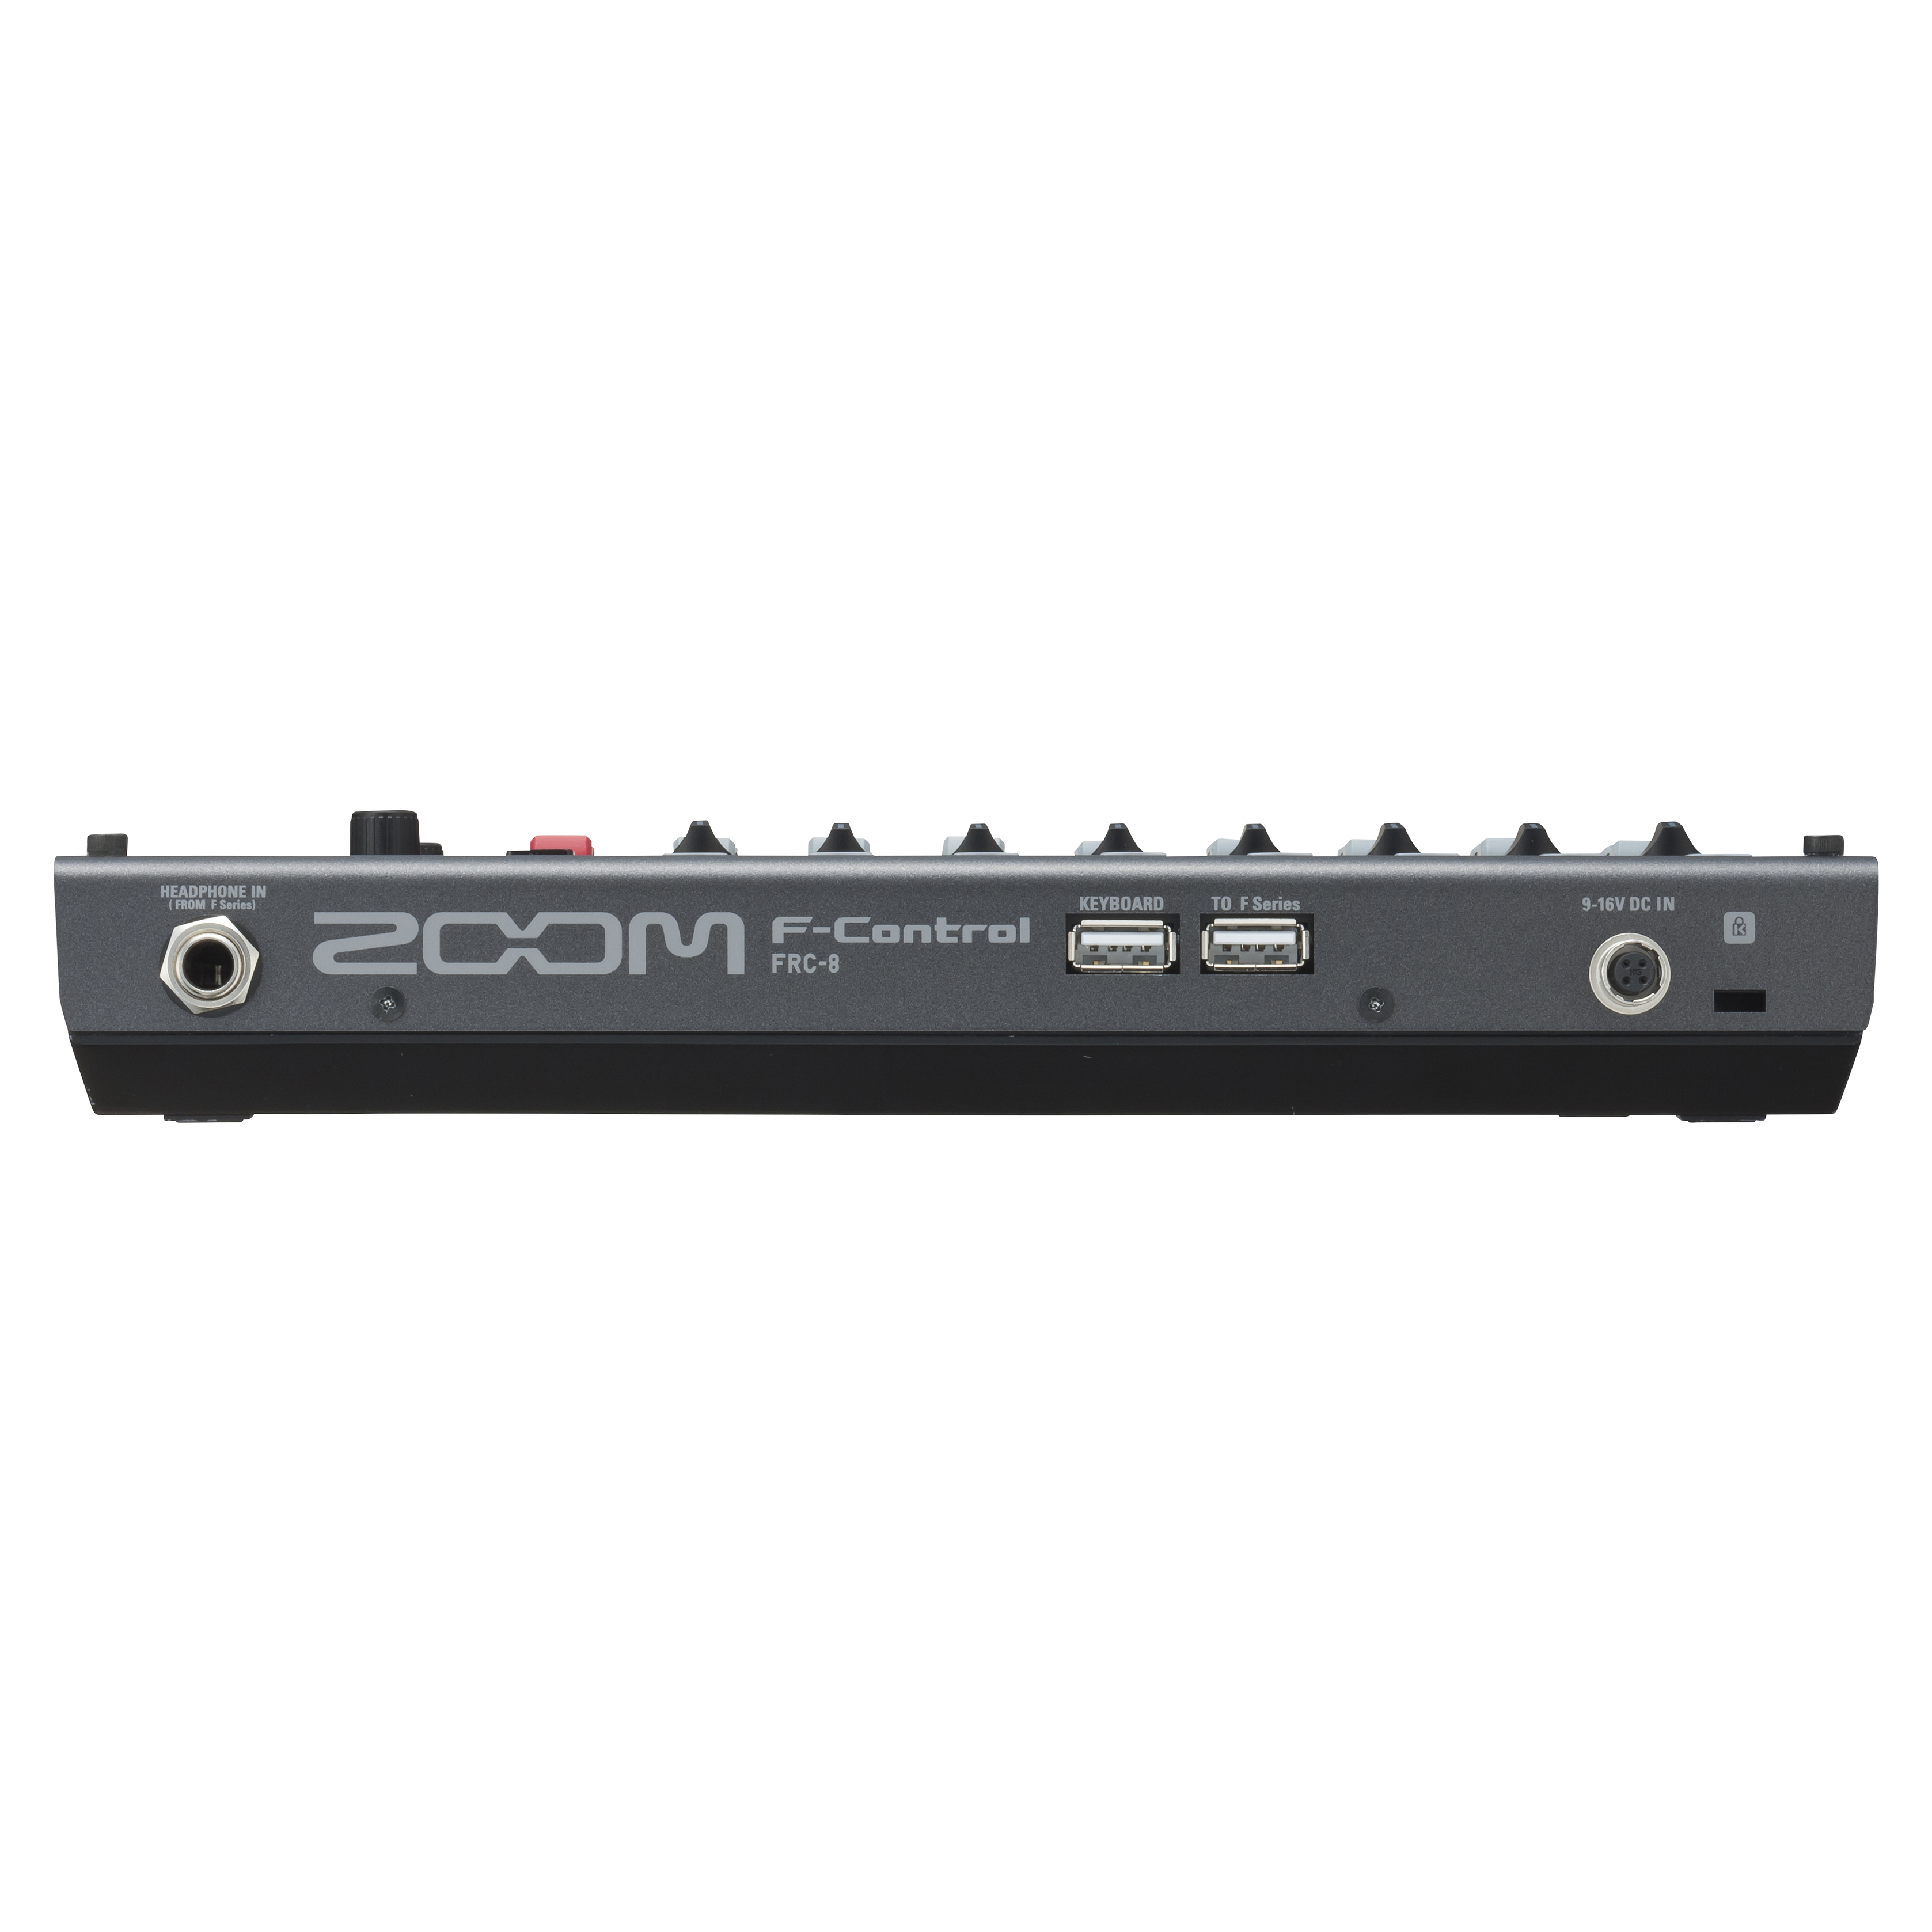 Zoom F-control Frc-8 - Grabadora de varias pistas - Variation 2